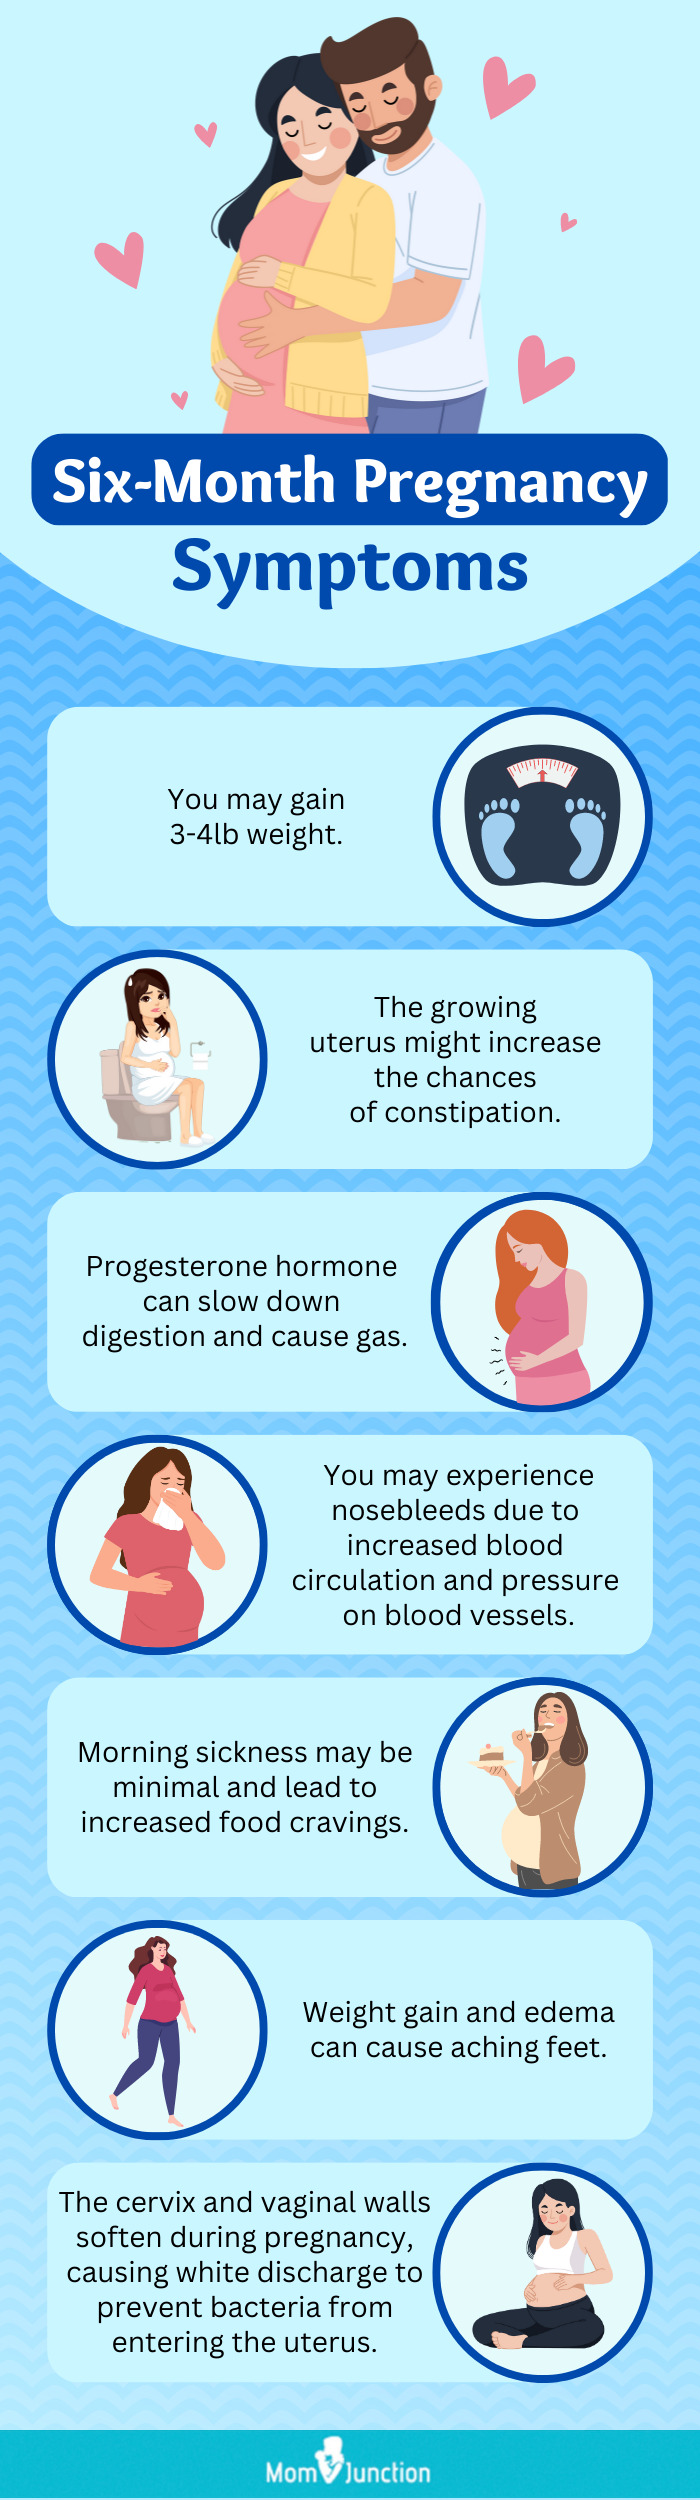 妊娠第六个月的症状(信息图)